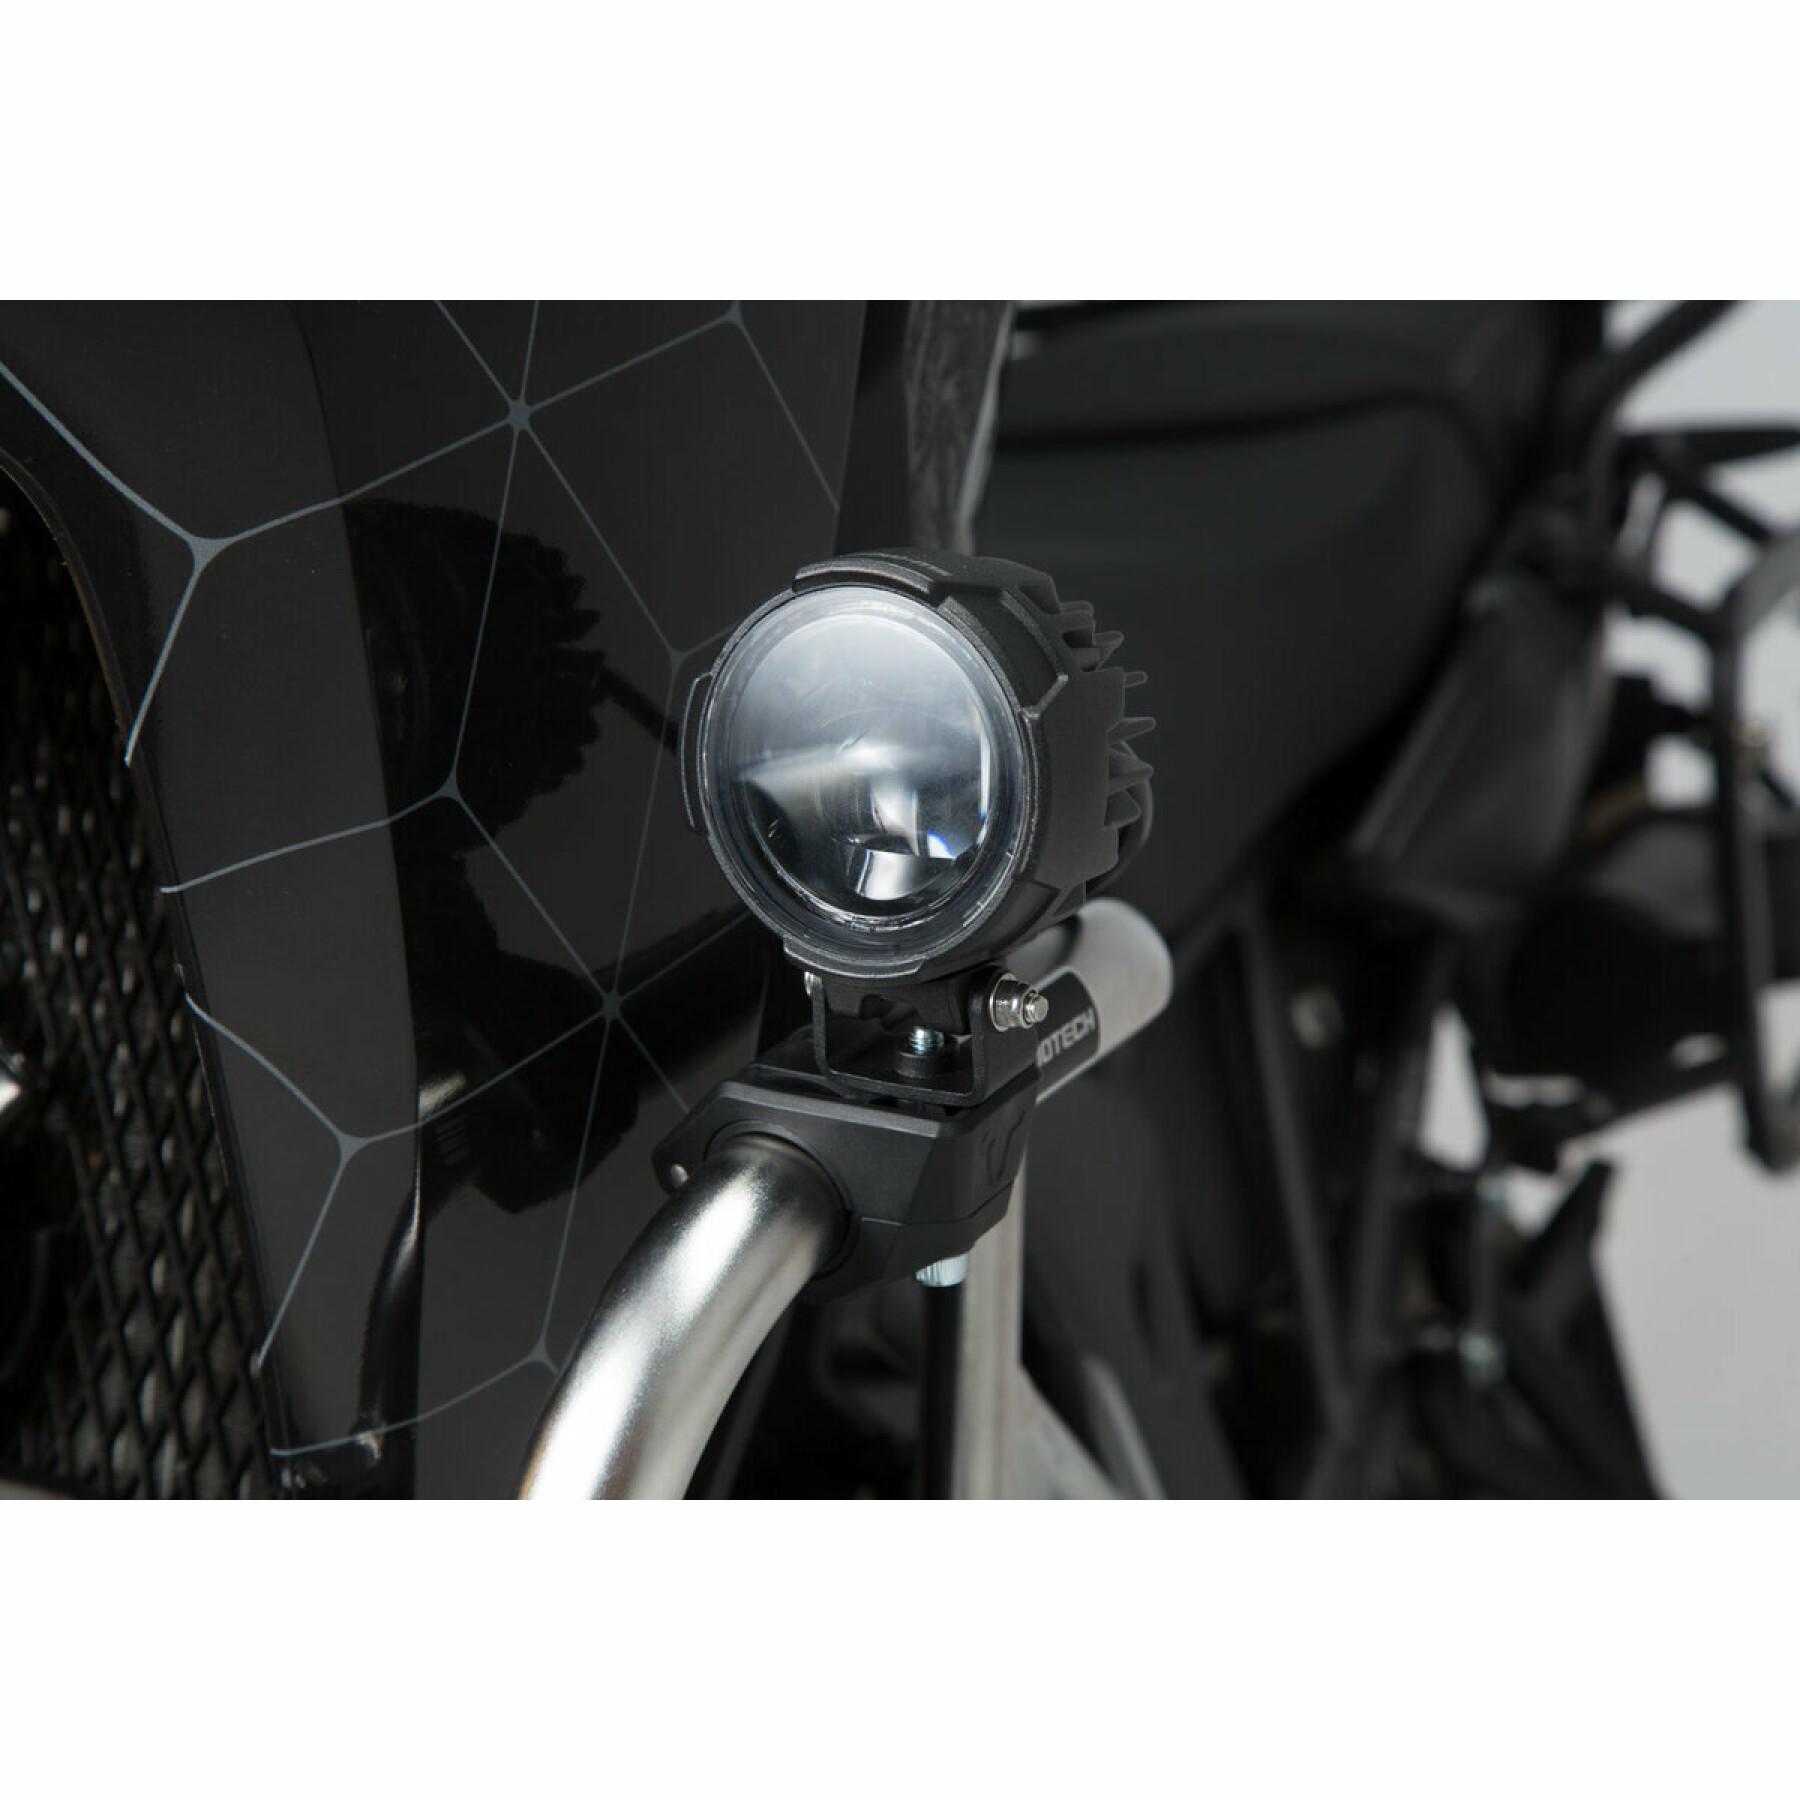 Phares LED additionnels longue portée pour moto BMW